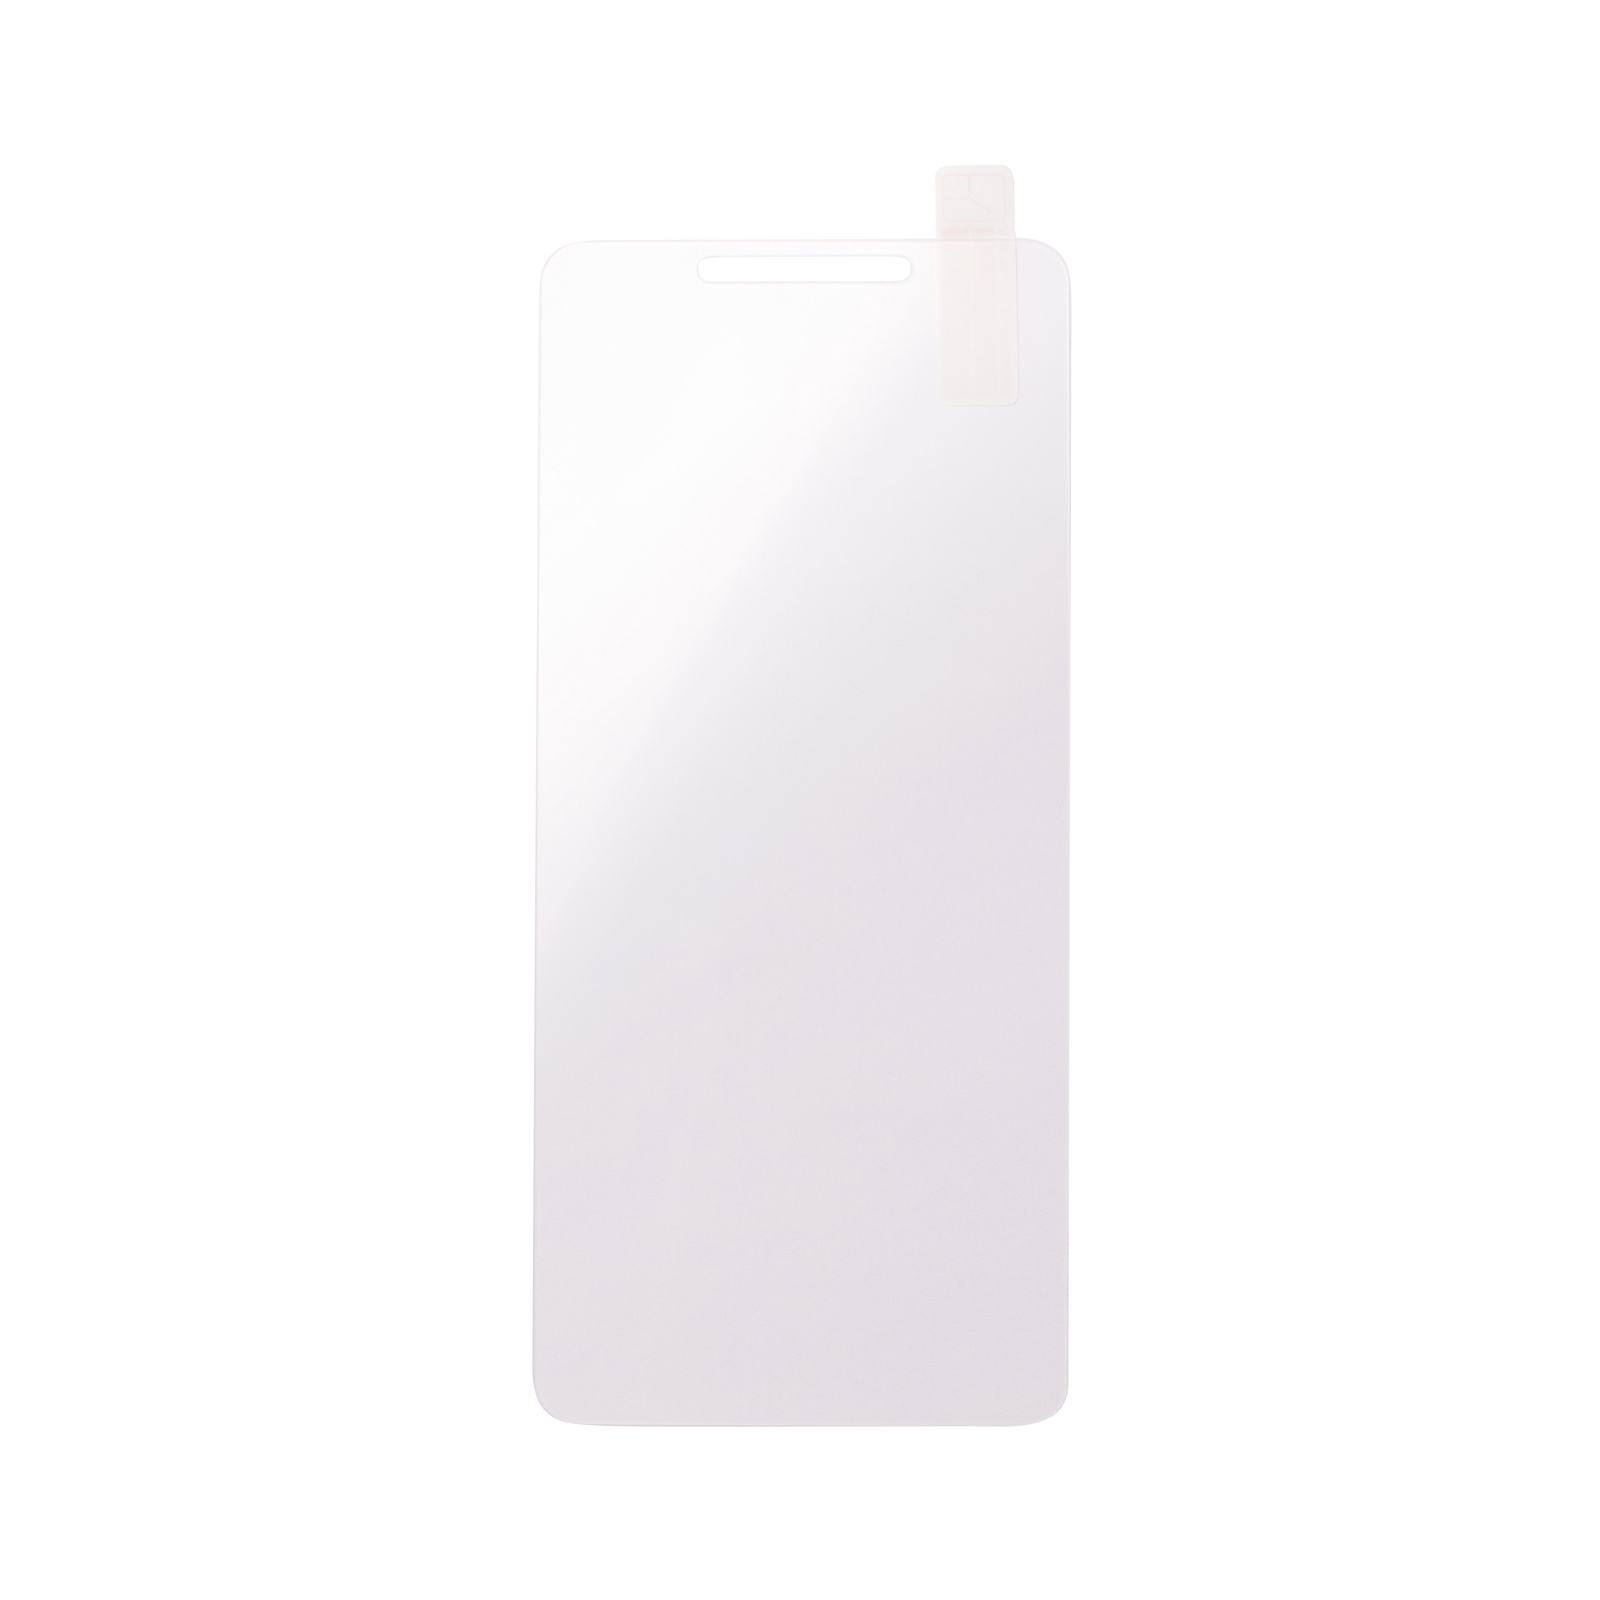 фото Mr Jefry стекло защитное (многослойное) 2,5D для Xiaomi Redmi R6